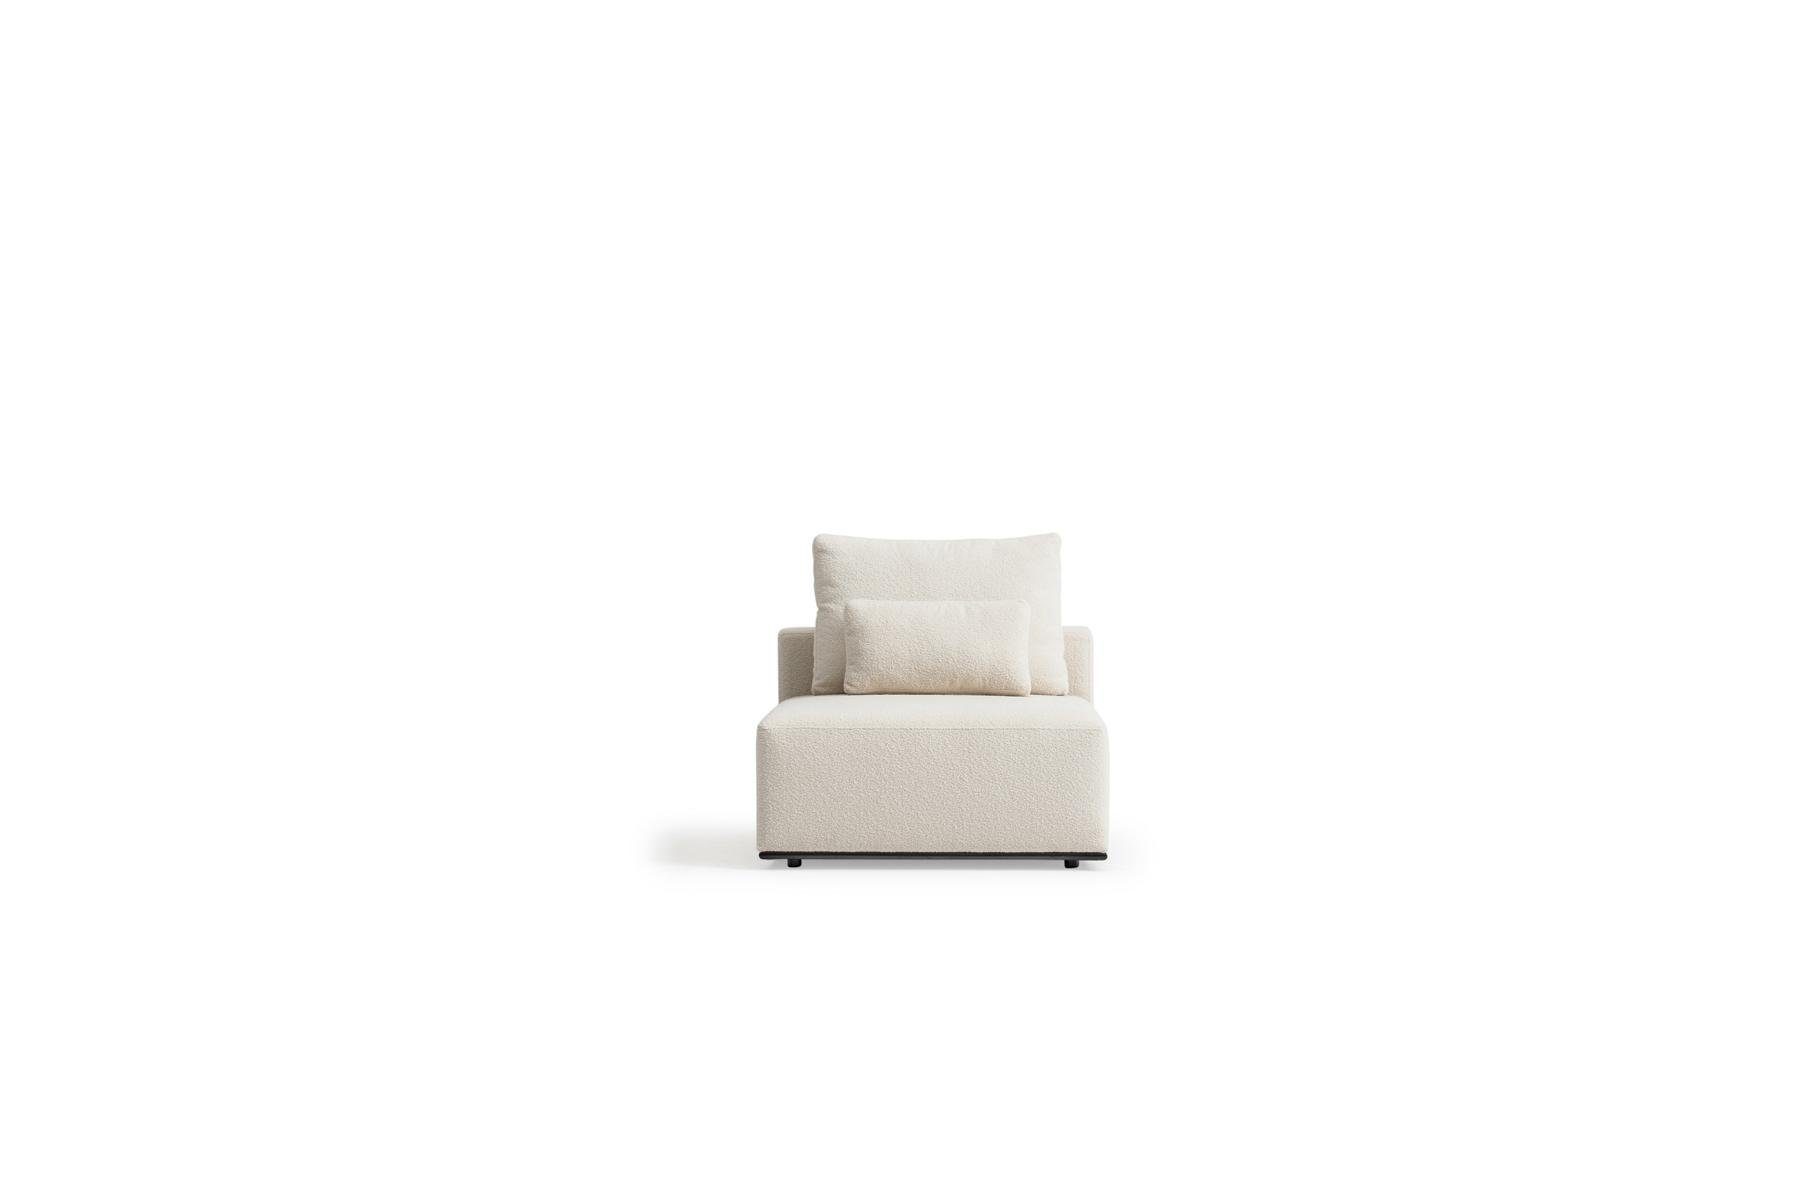 JVmoebel 3-Sitzer Weißer Luxus Dreisitzer Europe Made Teile, Textilsofas, Wohnzimmereinrichtung in 2 Sofa